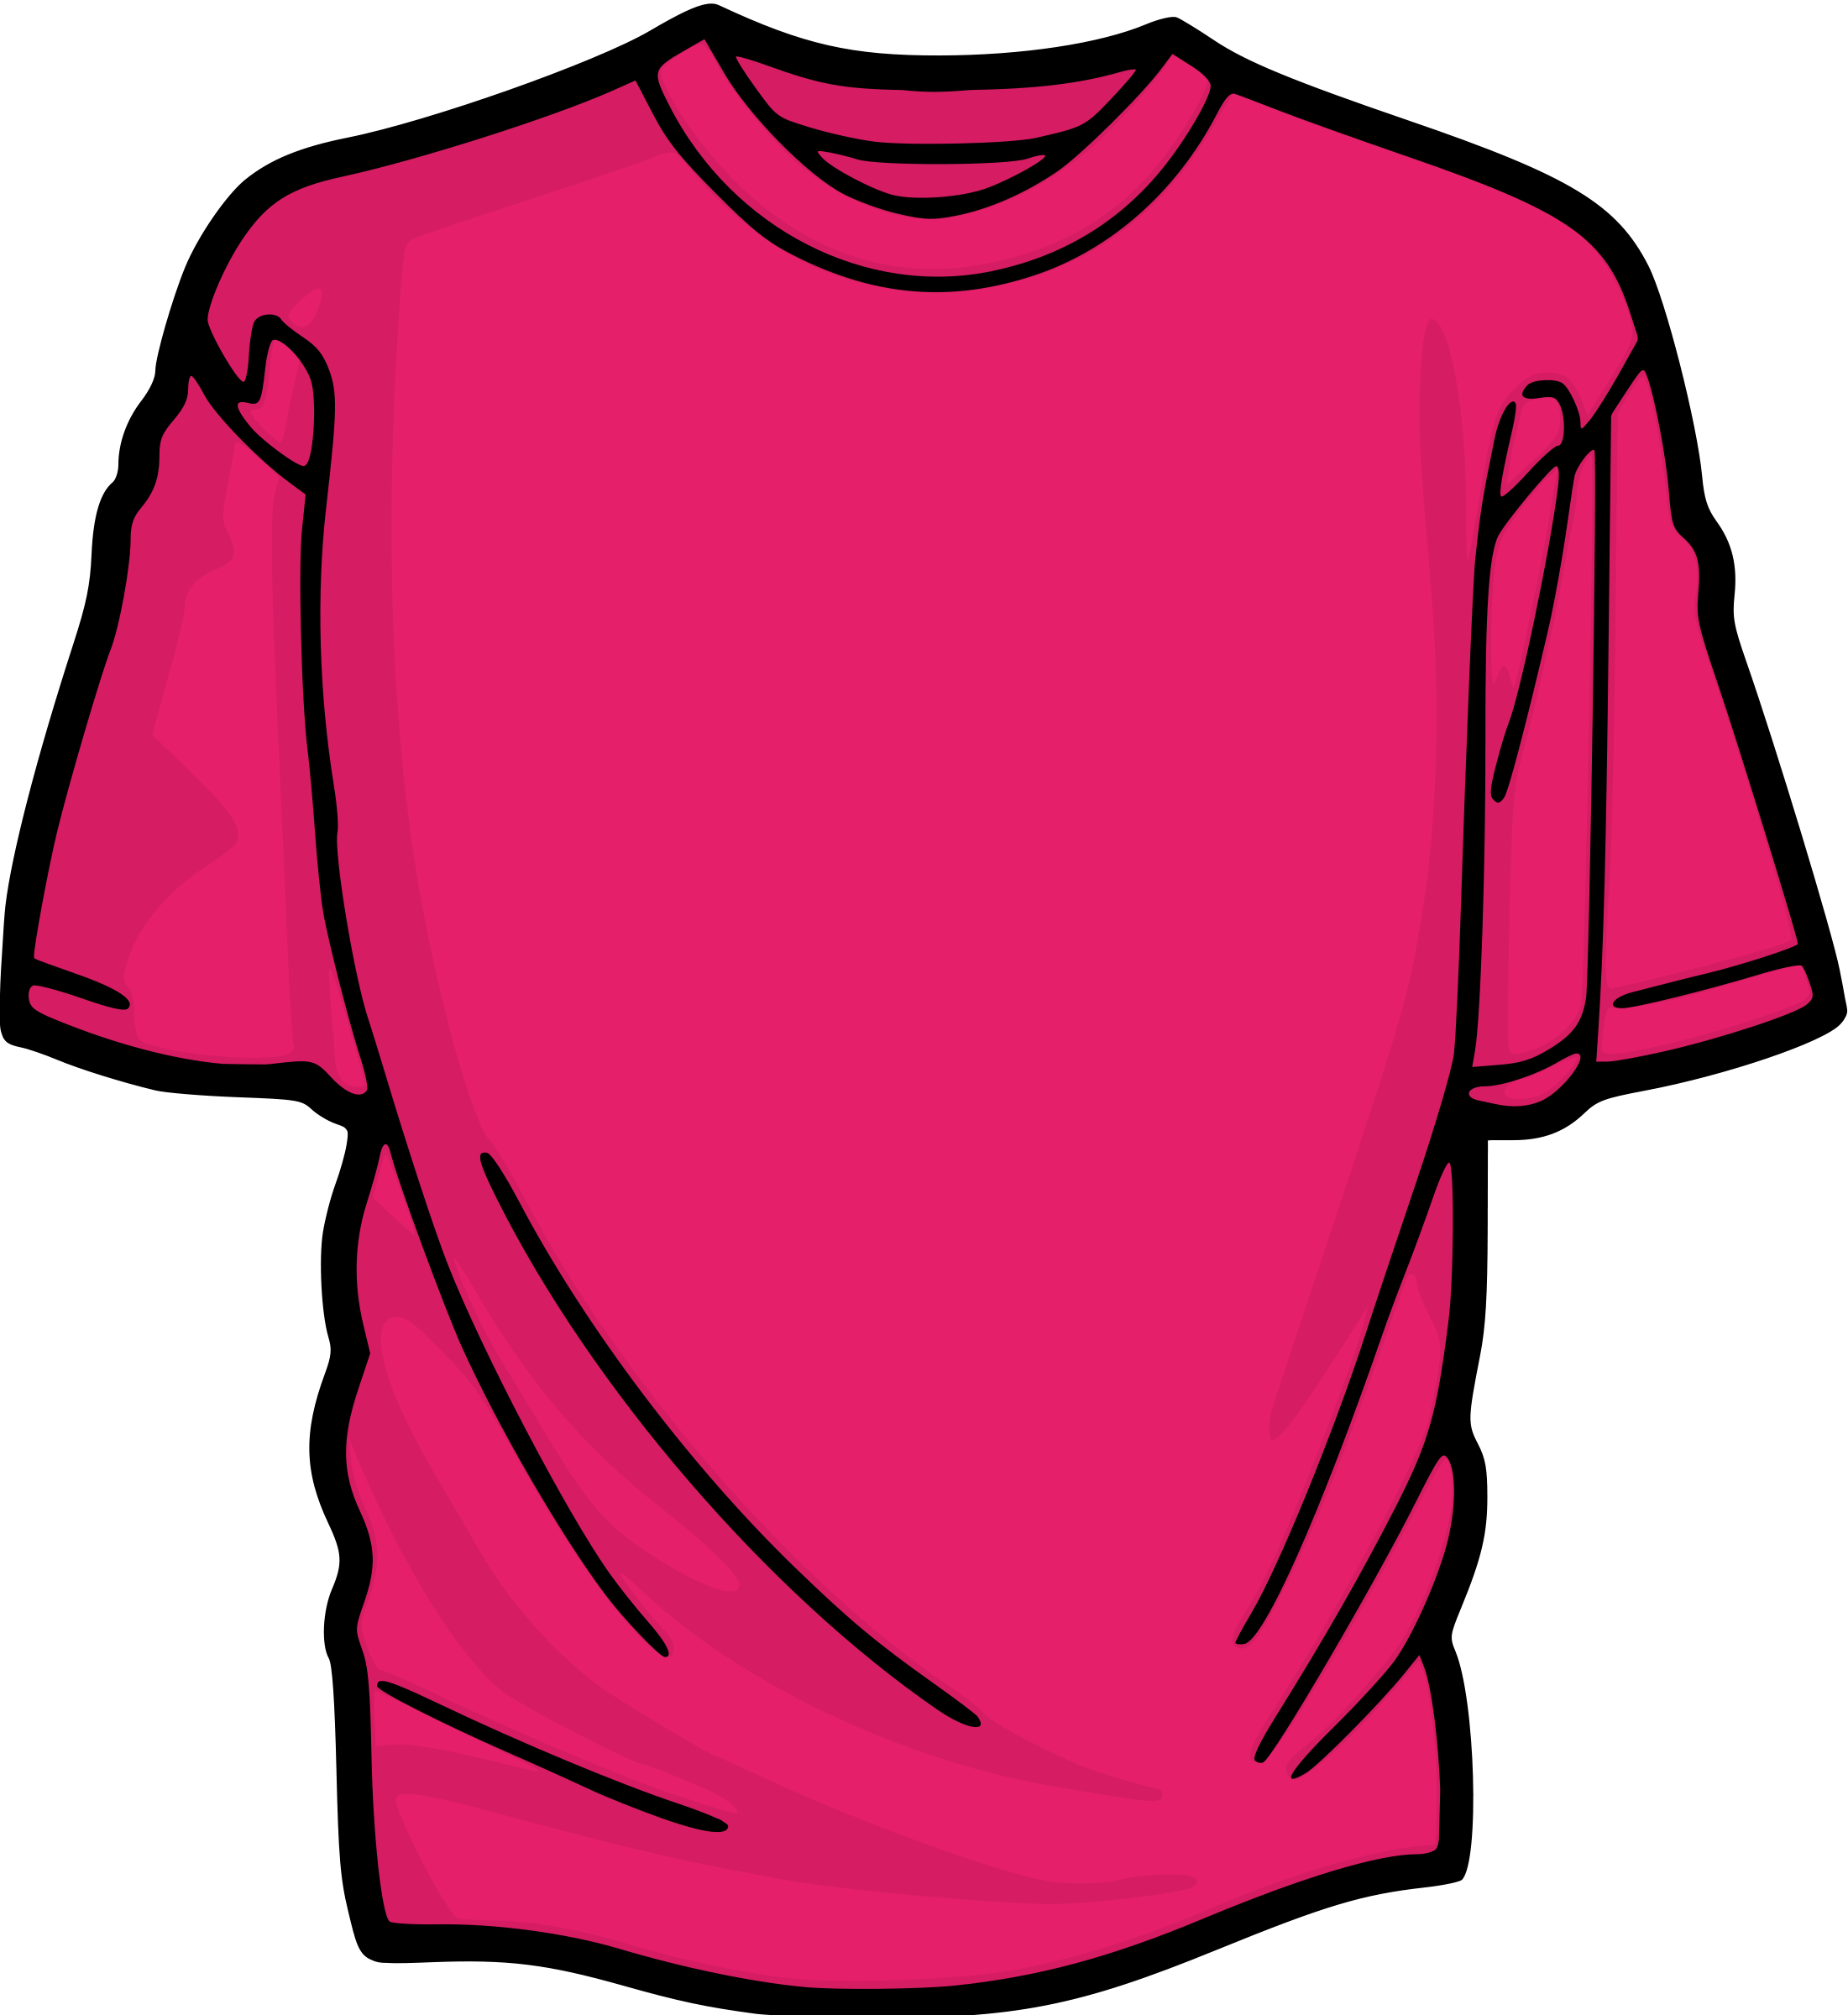 T shirt clip art of a shirt clipart